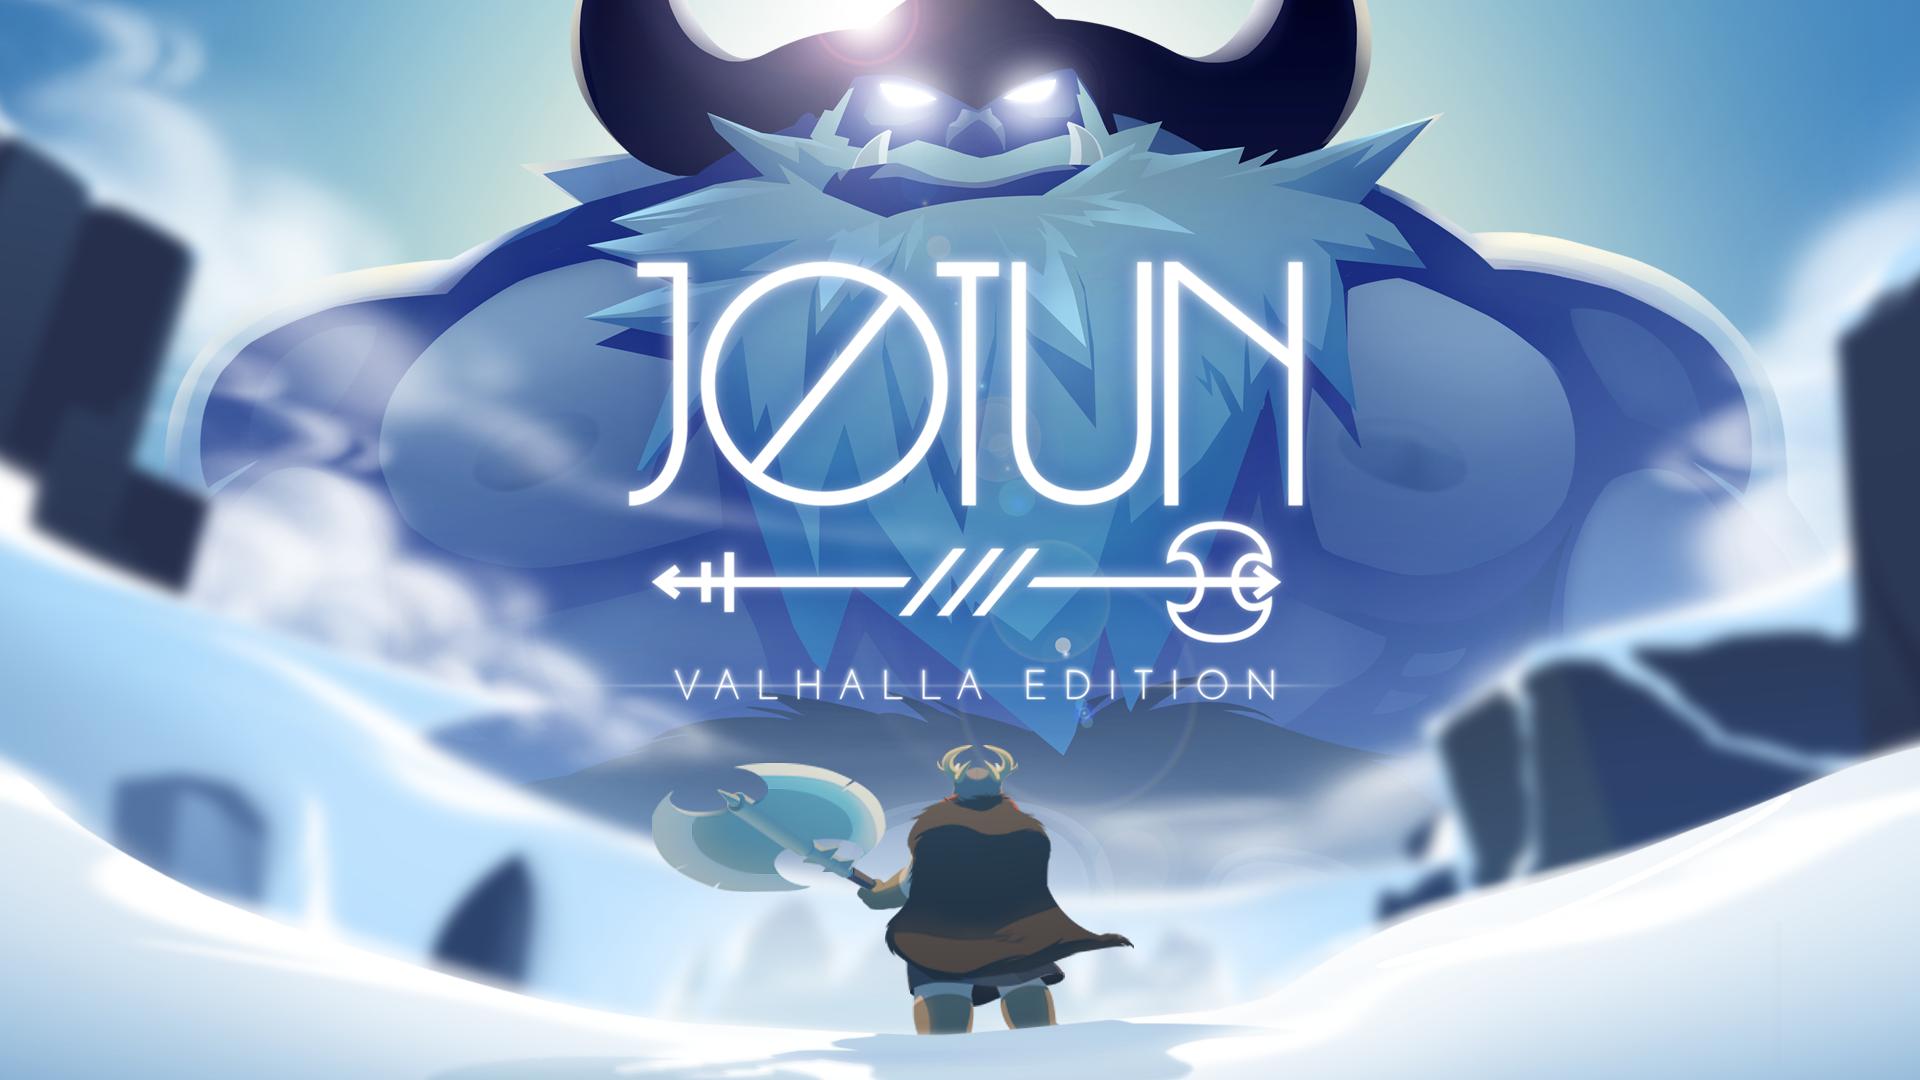 Jotun Valhalla Edition For Nintendo Switch Game Details